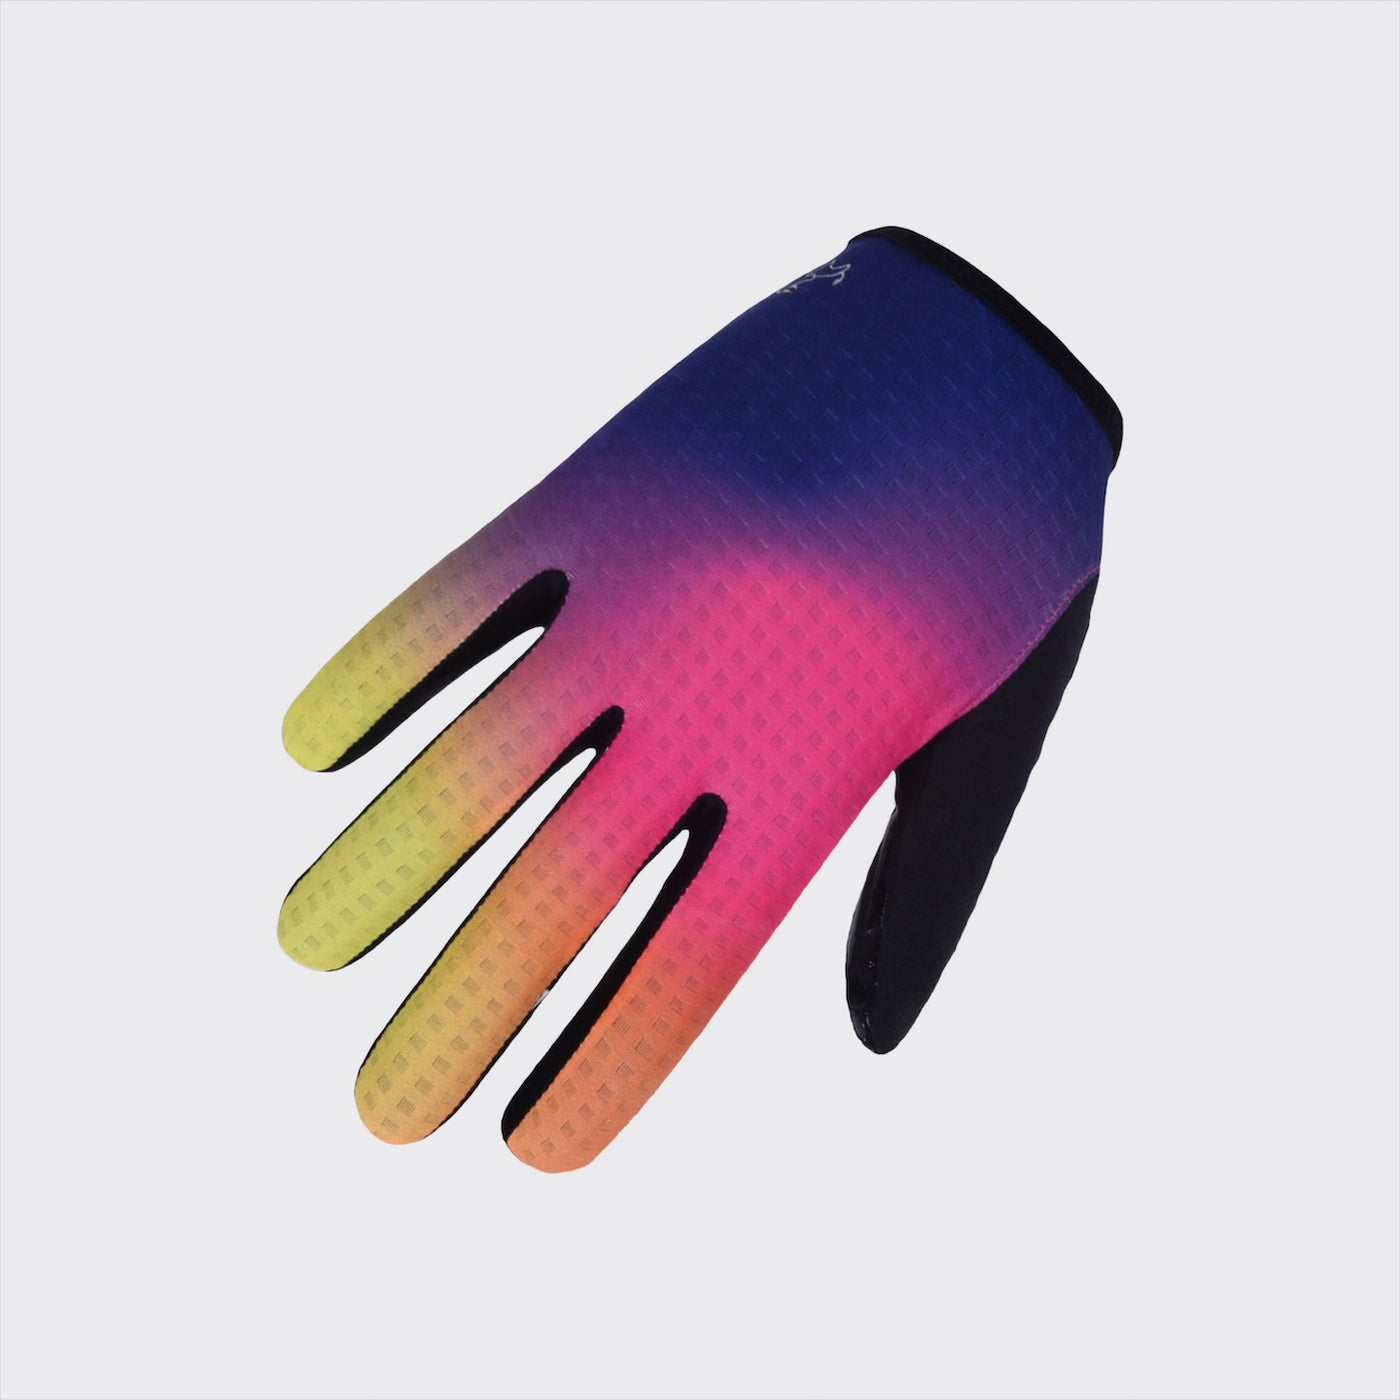 Primo Long Finger Gloves